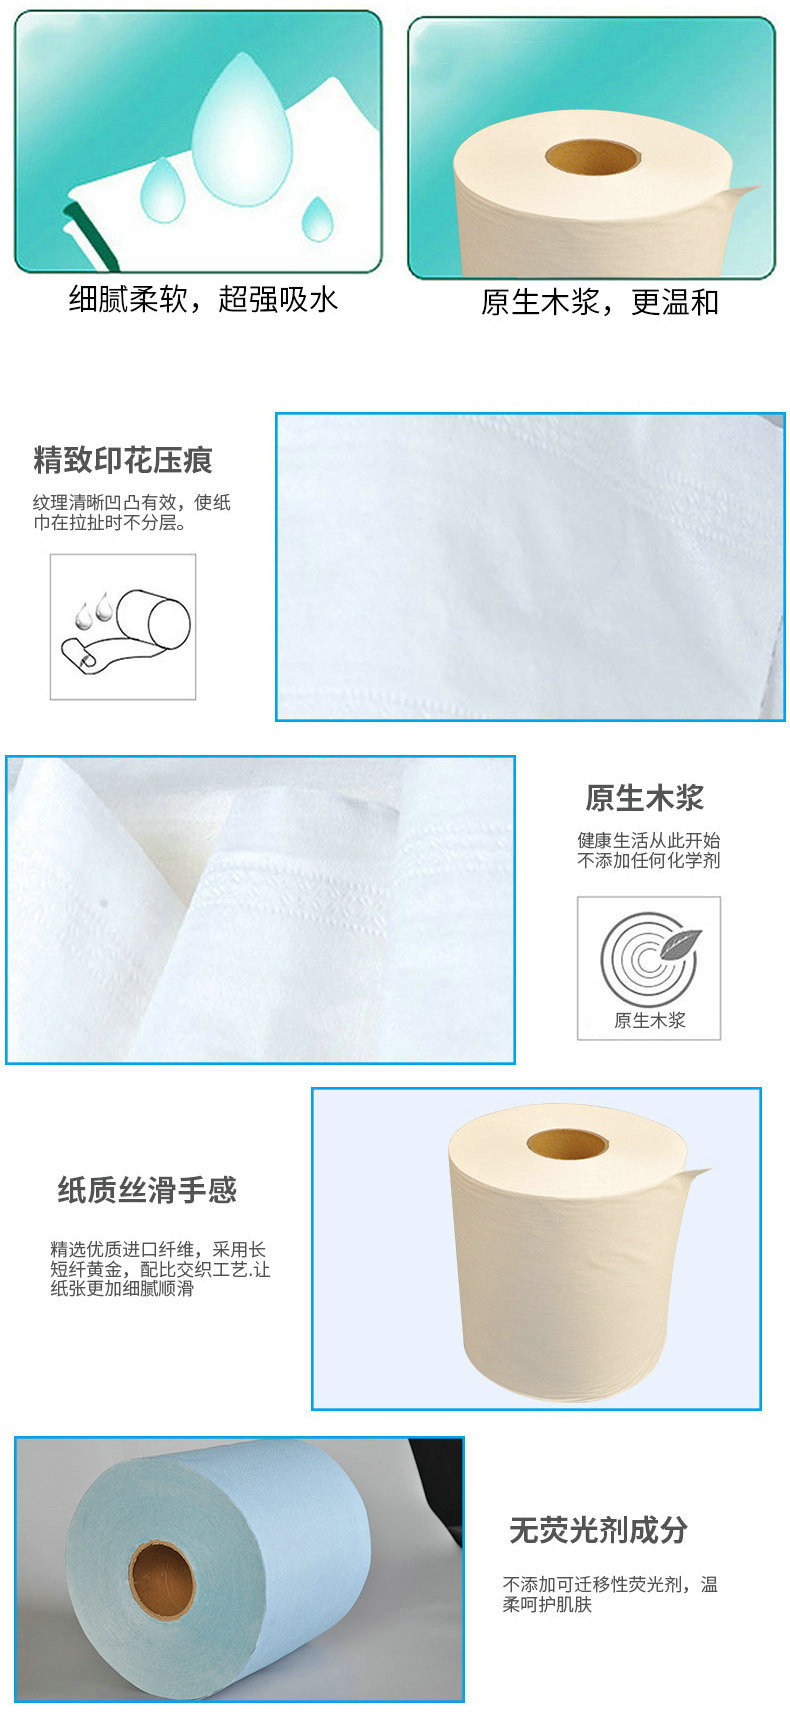 苏州优质生产商YAMAHA DEK全自动钢网擦拭纸清洁纸SMT无尘卷纸